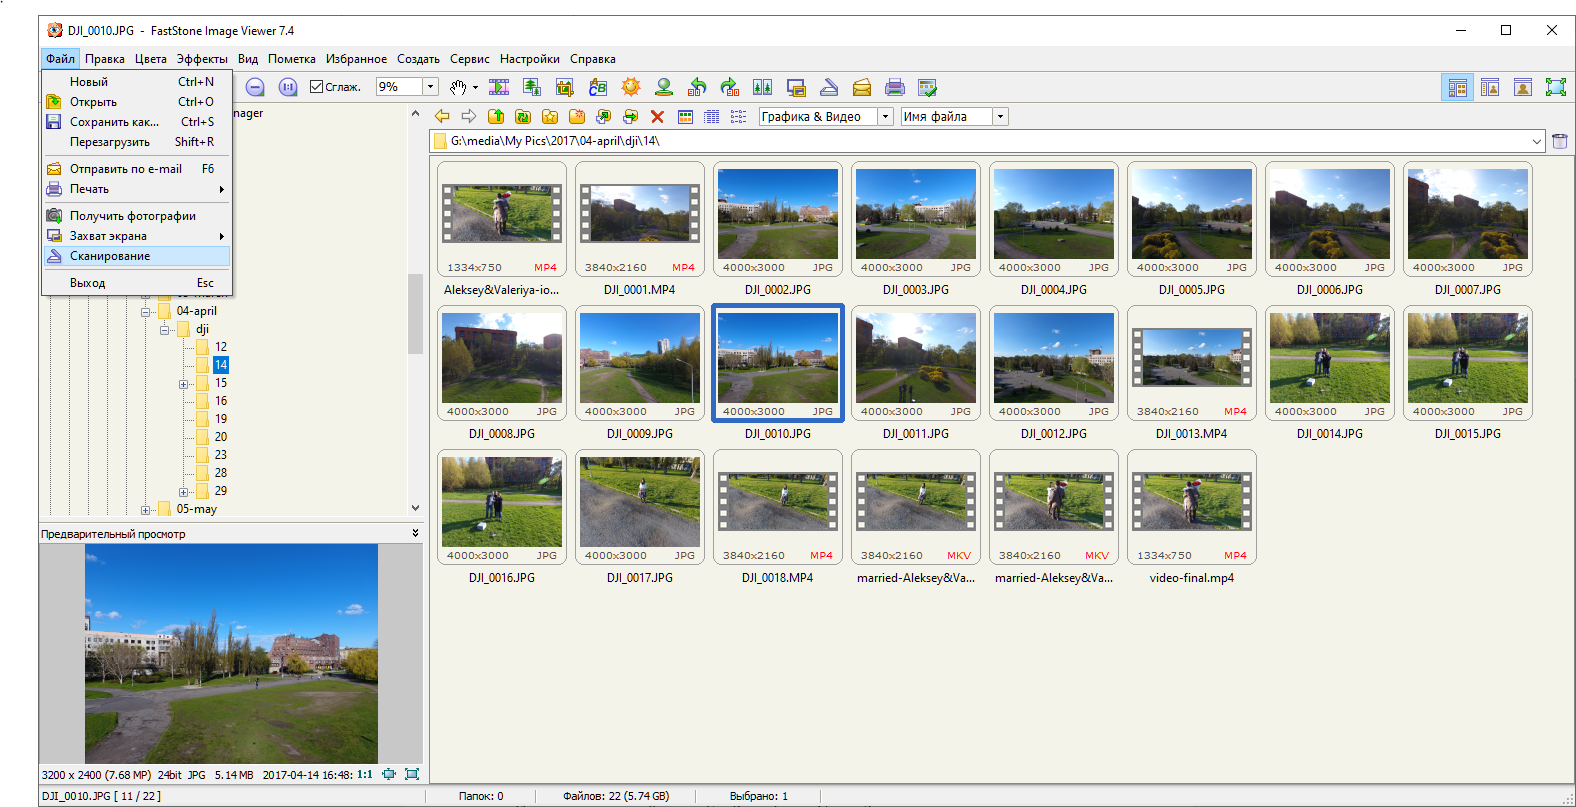 Faststone image viewer как сжать несколько фотографий одновременно